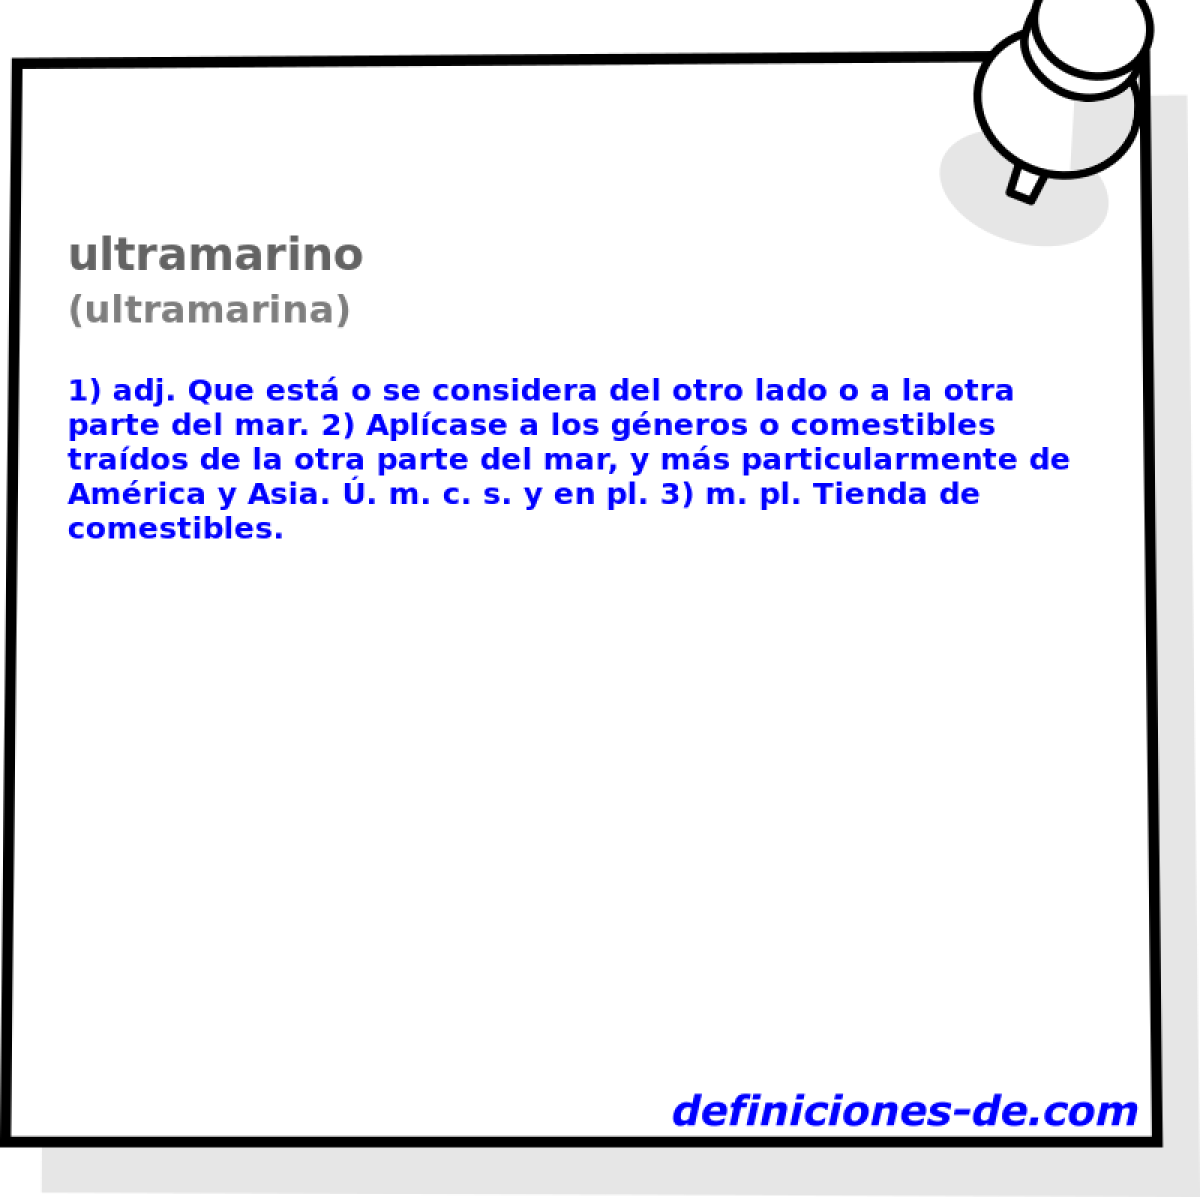 ultramarino (ultramarina)